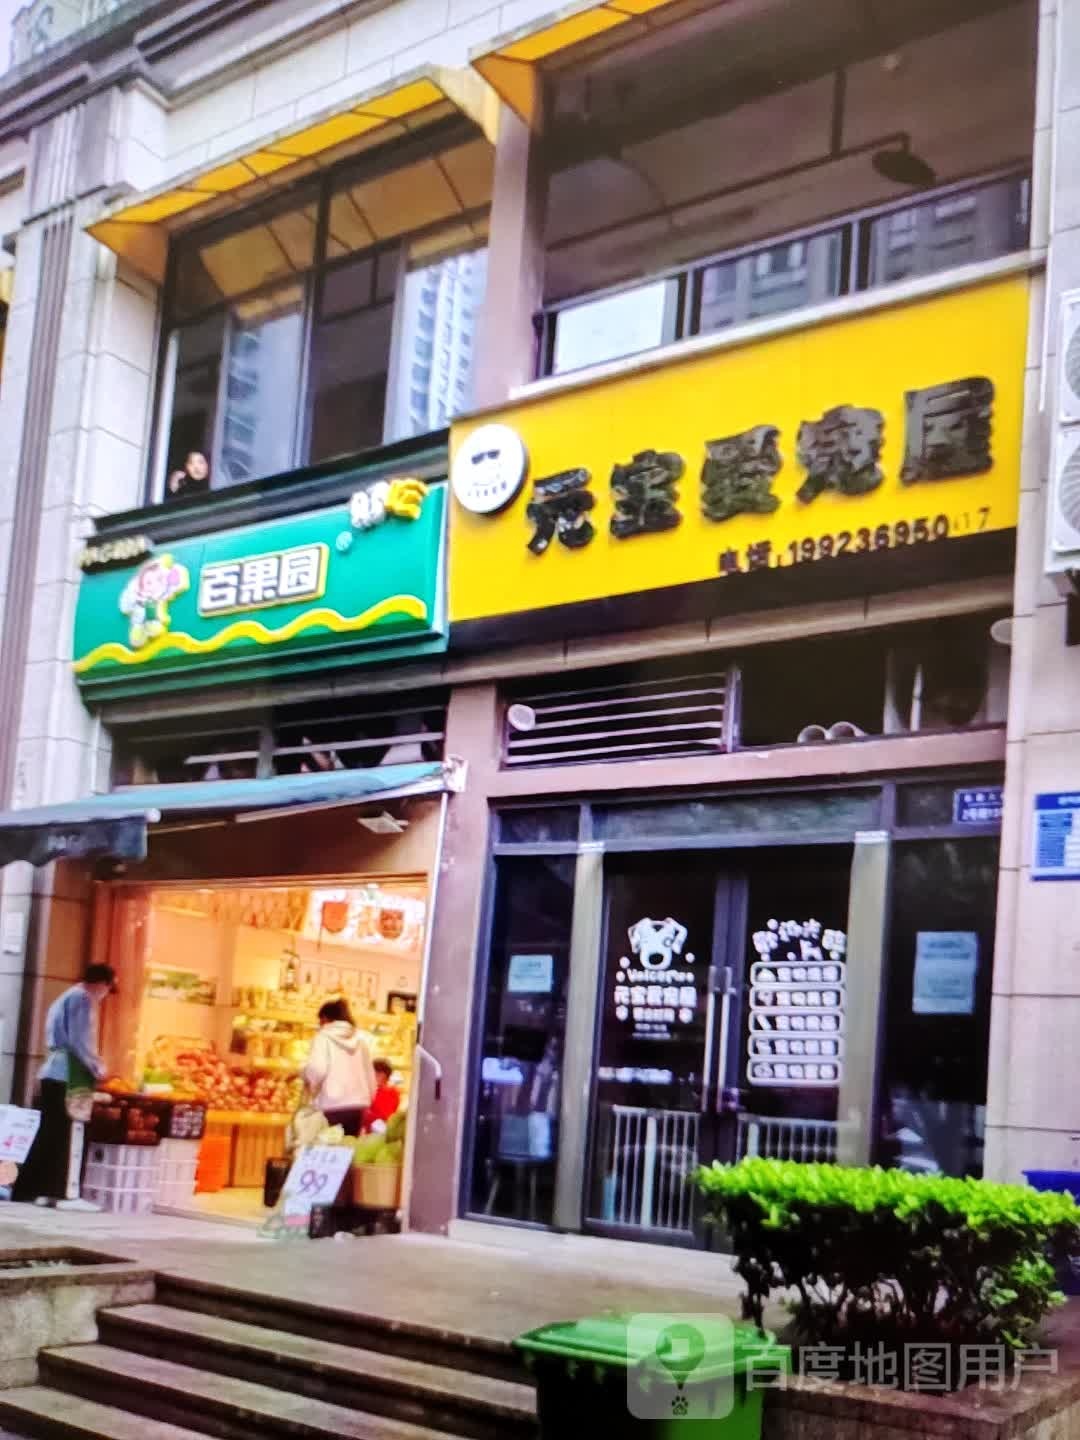 袁堡爱宠屋(万方购物中心人民街店)